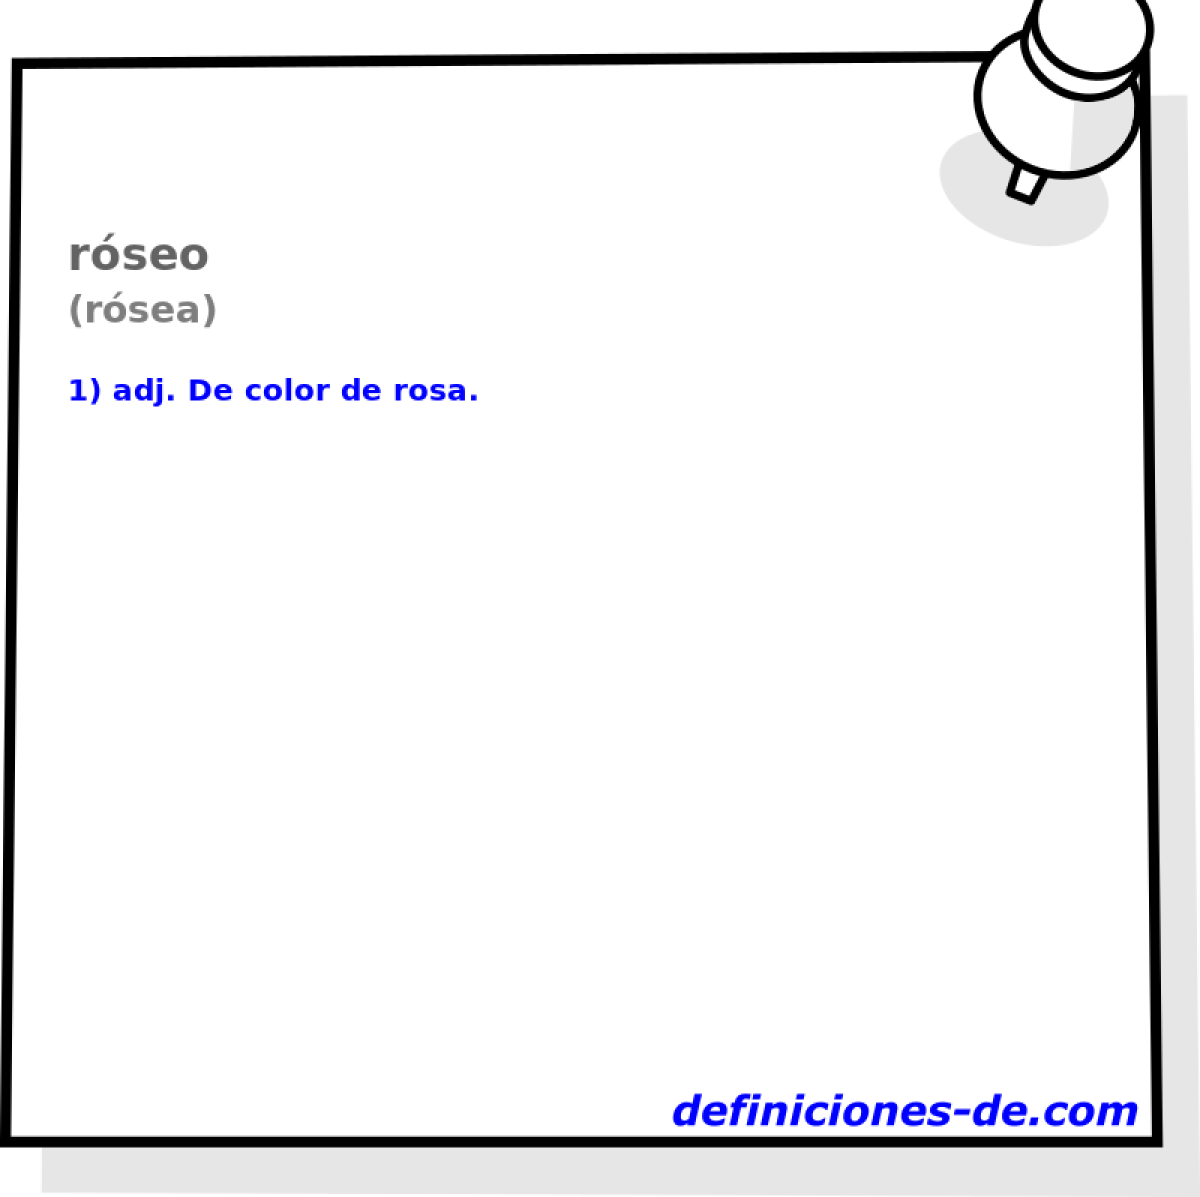 rseo (rsea)